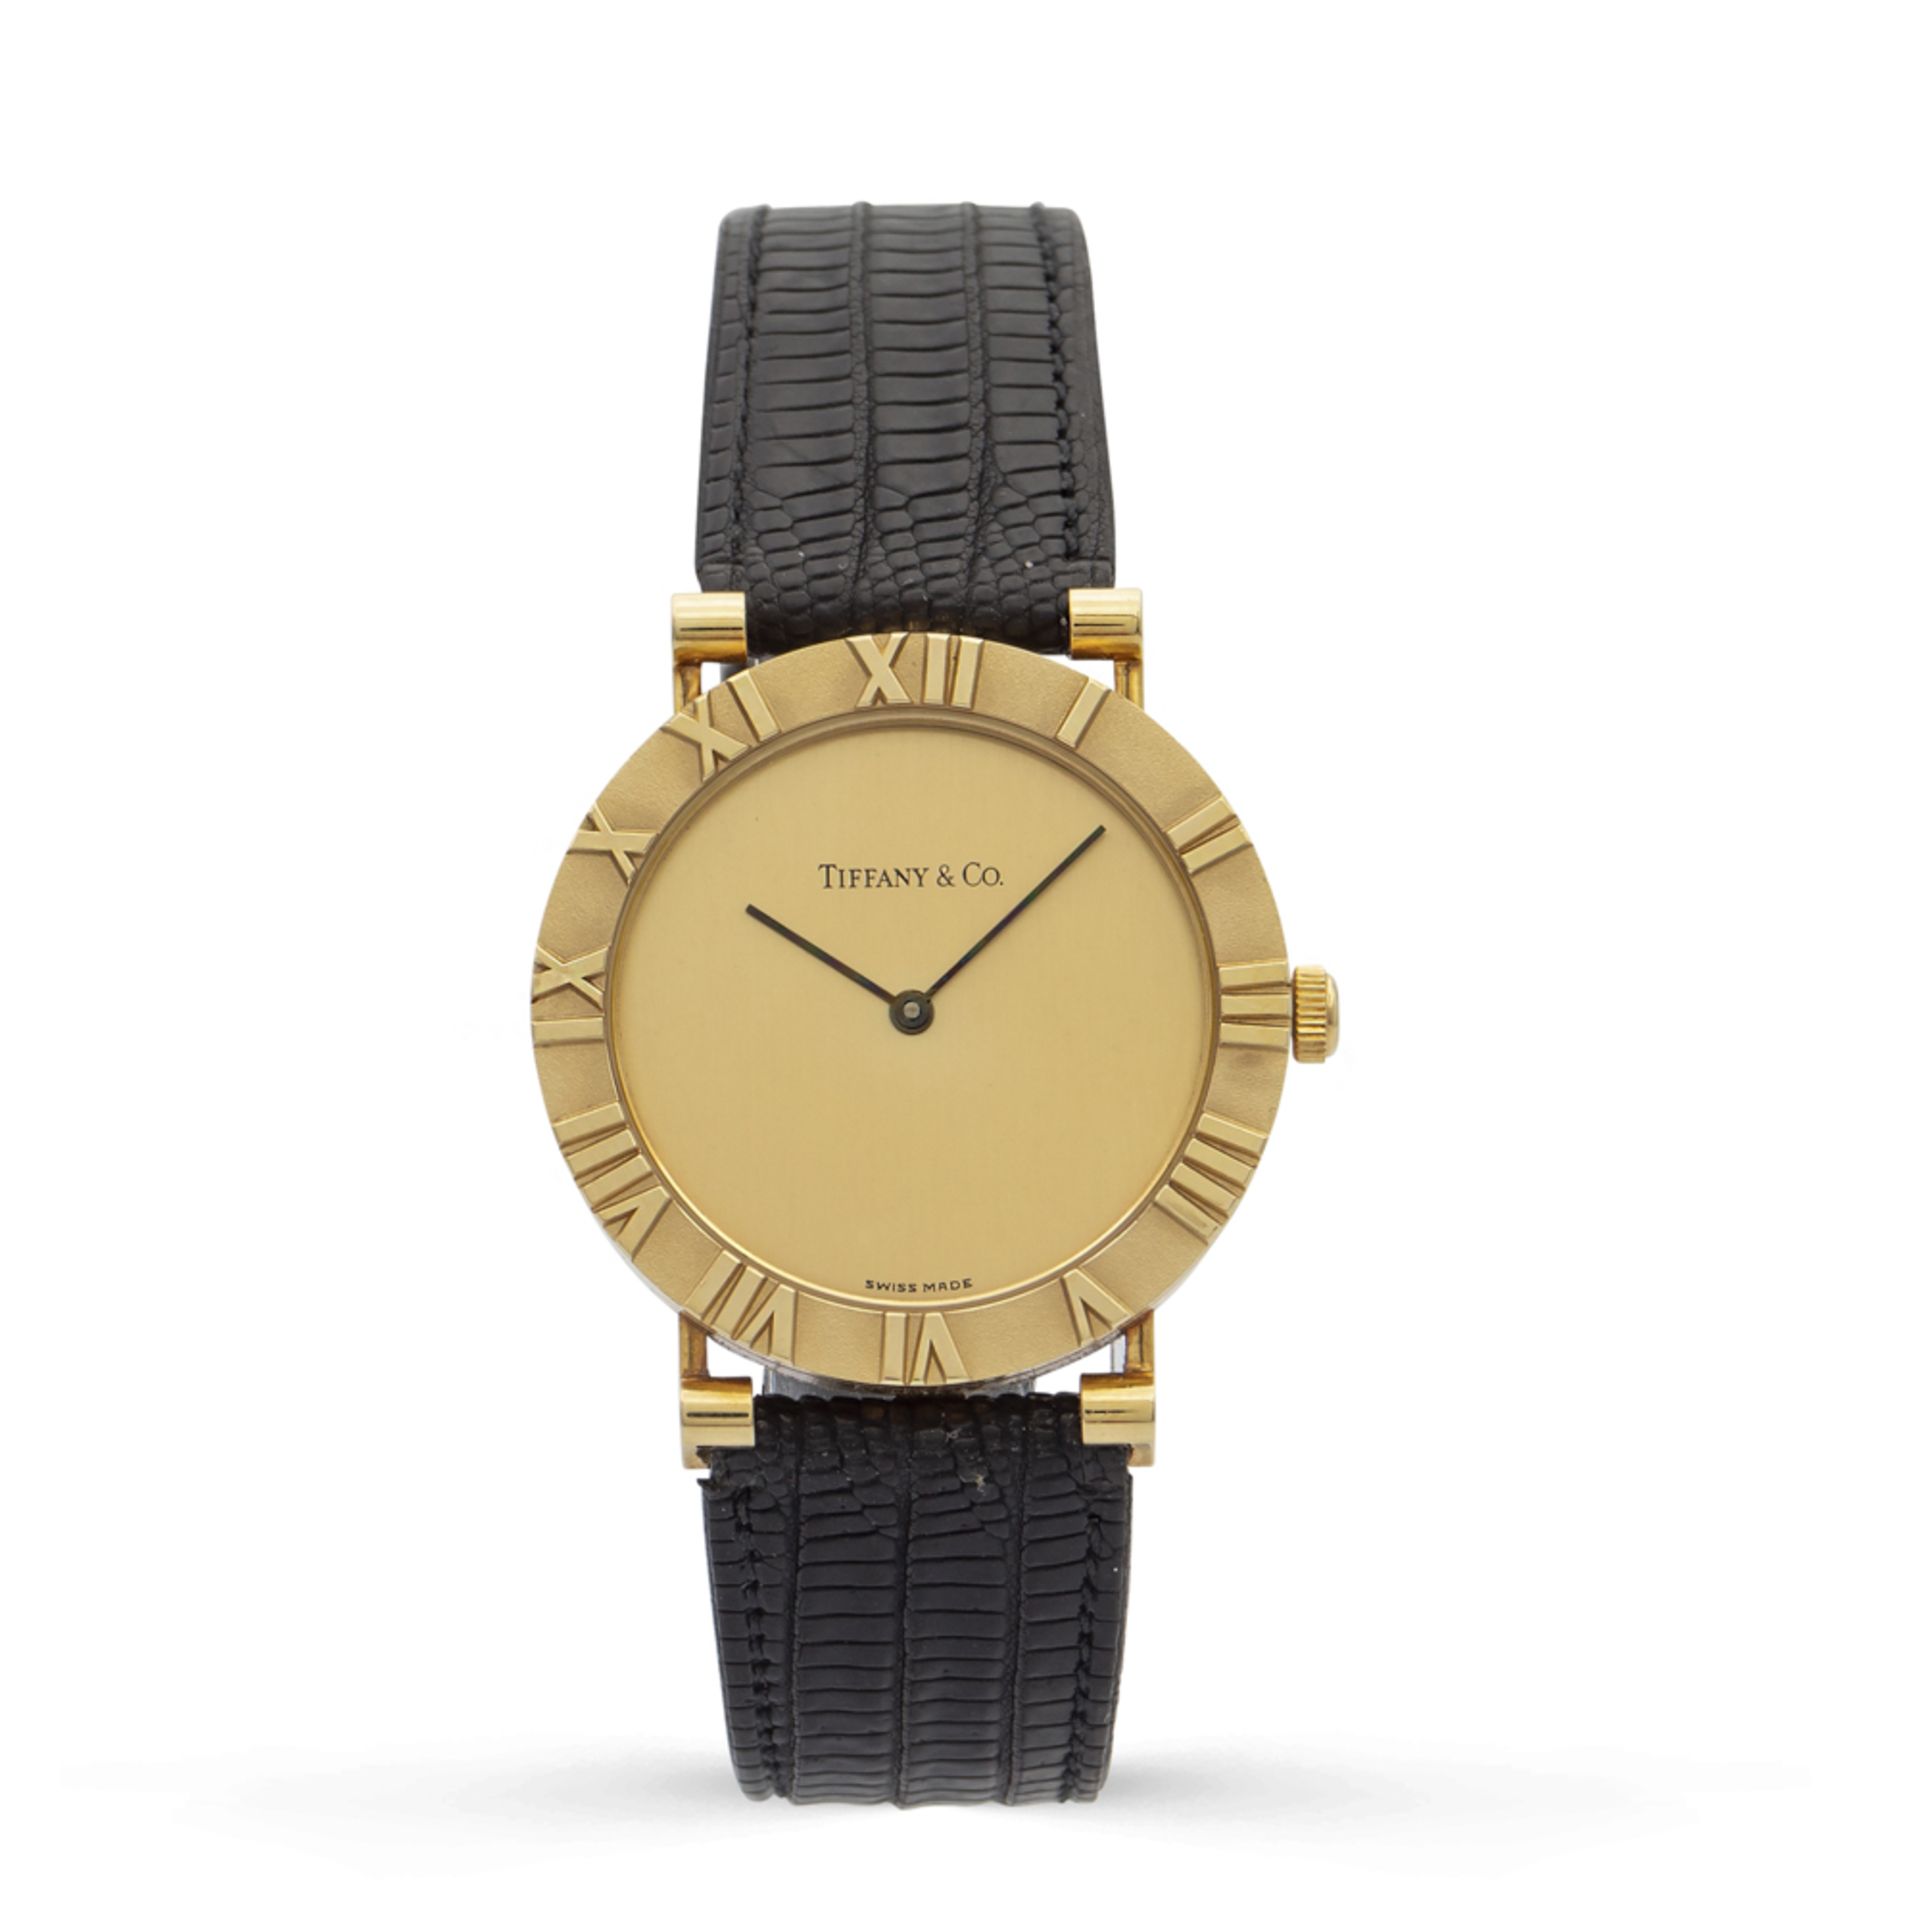 Tiffany & Co. Atlas, wrist watch